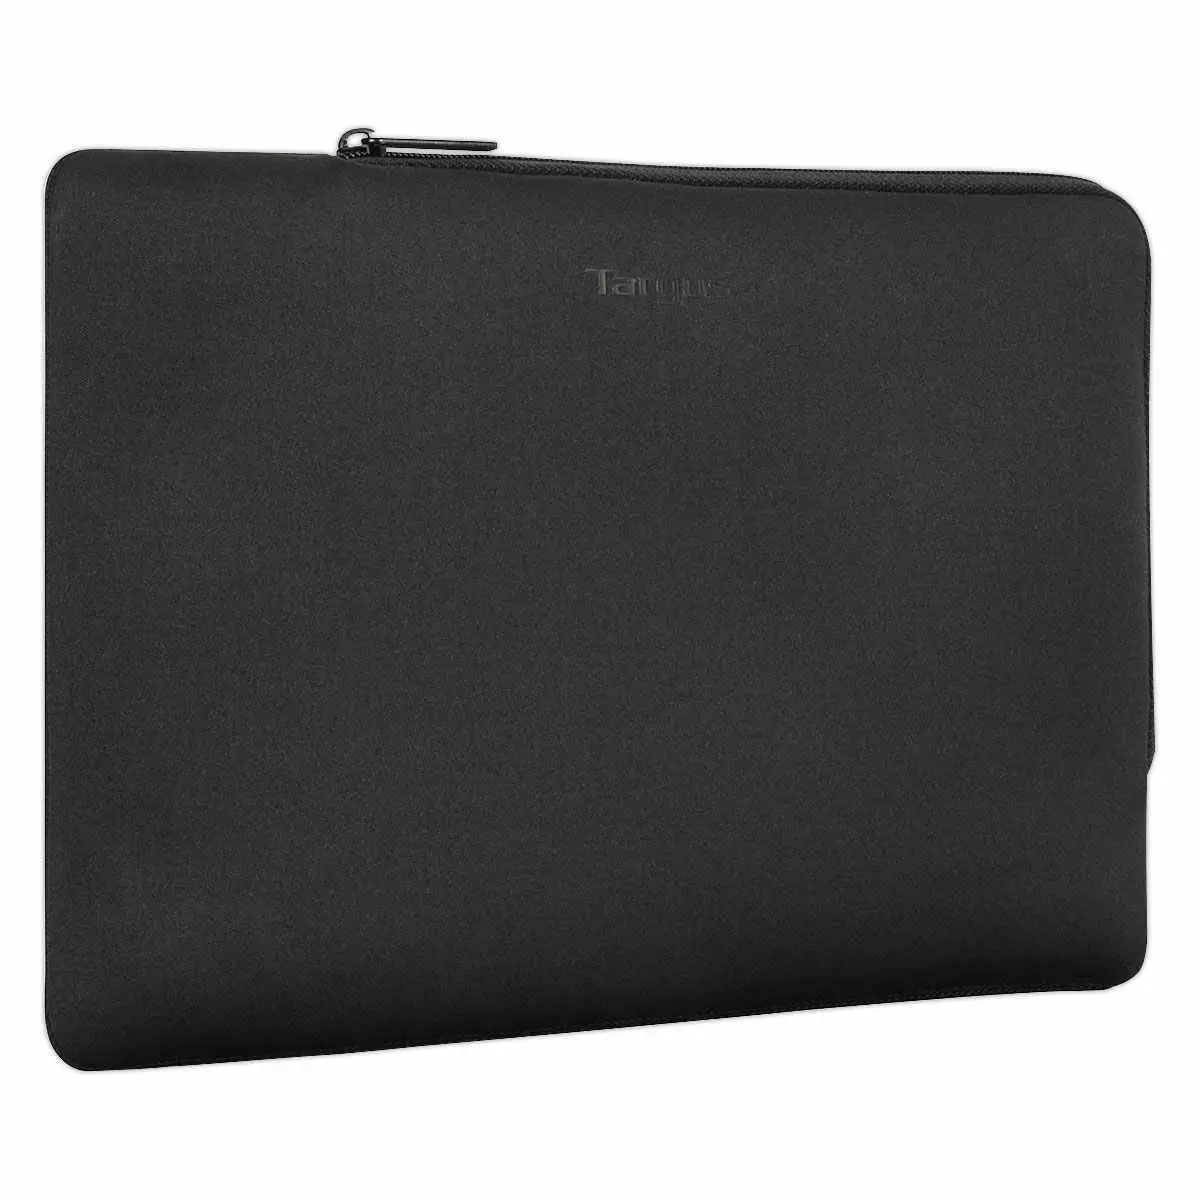 Housse PC & tablette - 15-16" - Noir - TARGUS photo du produit